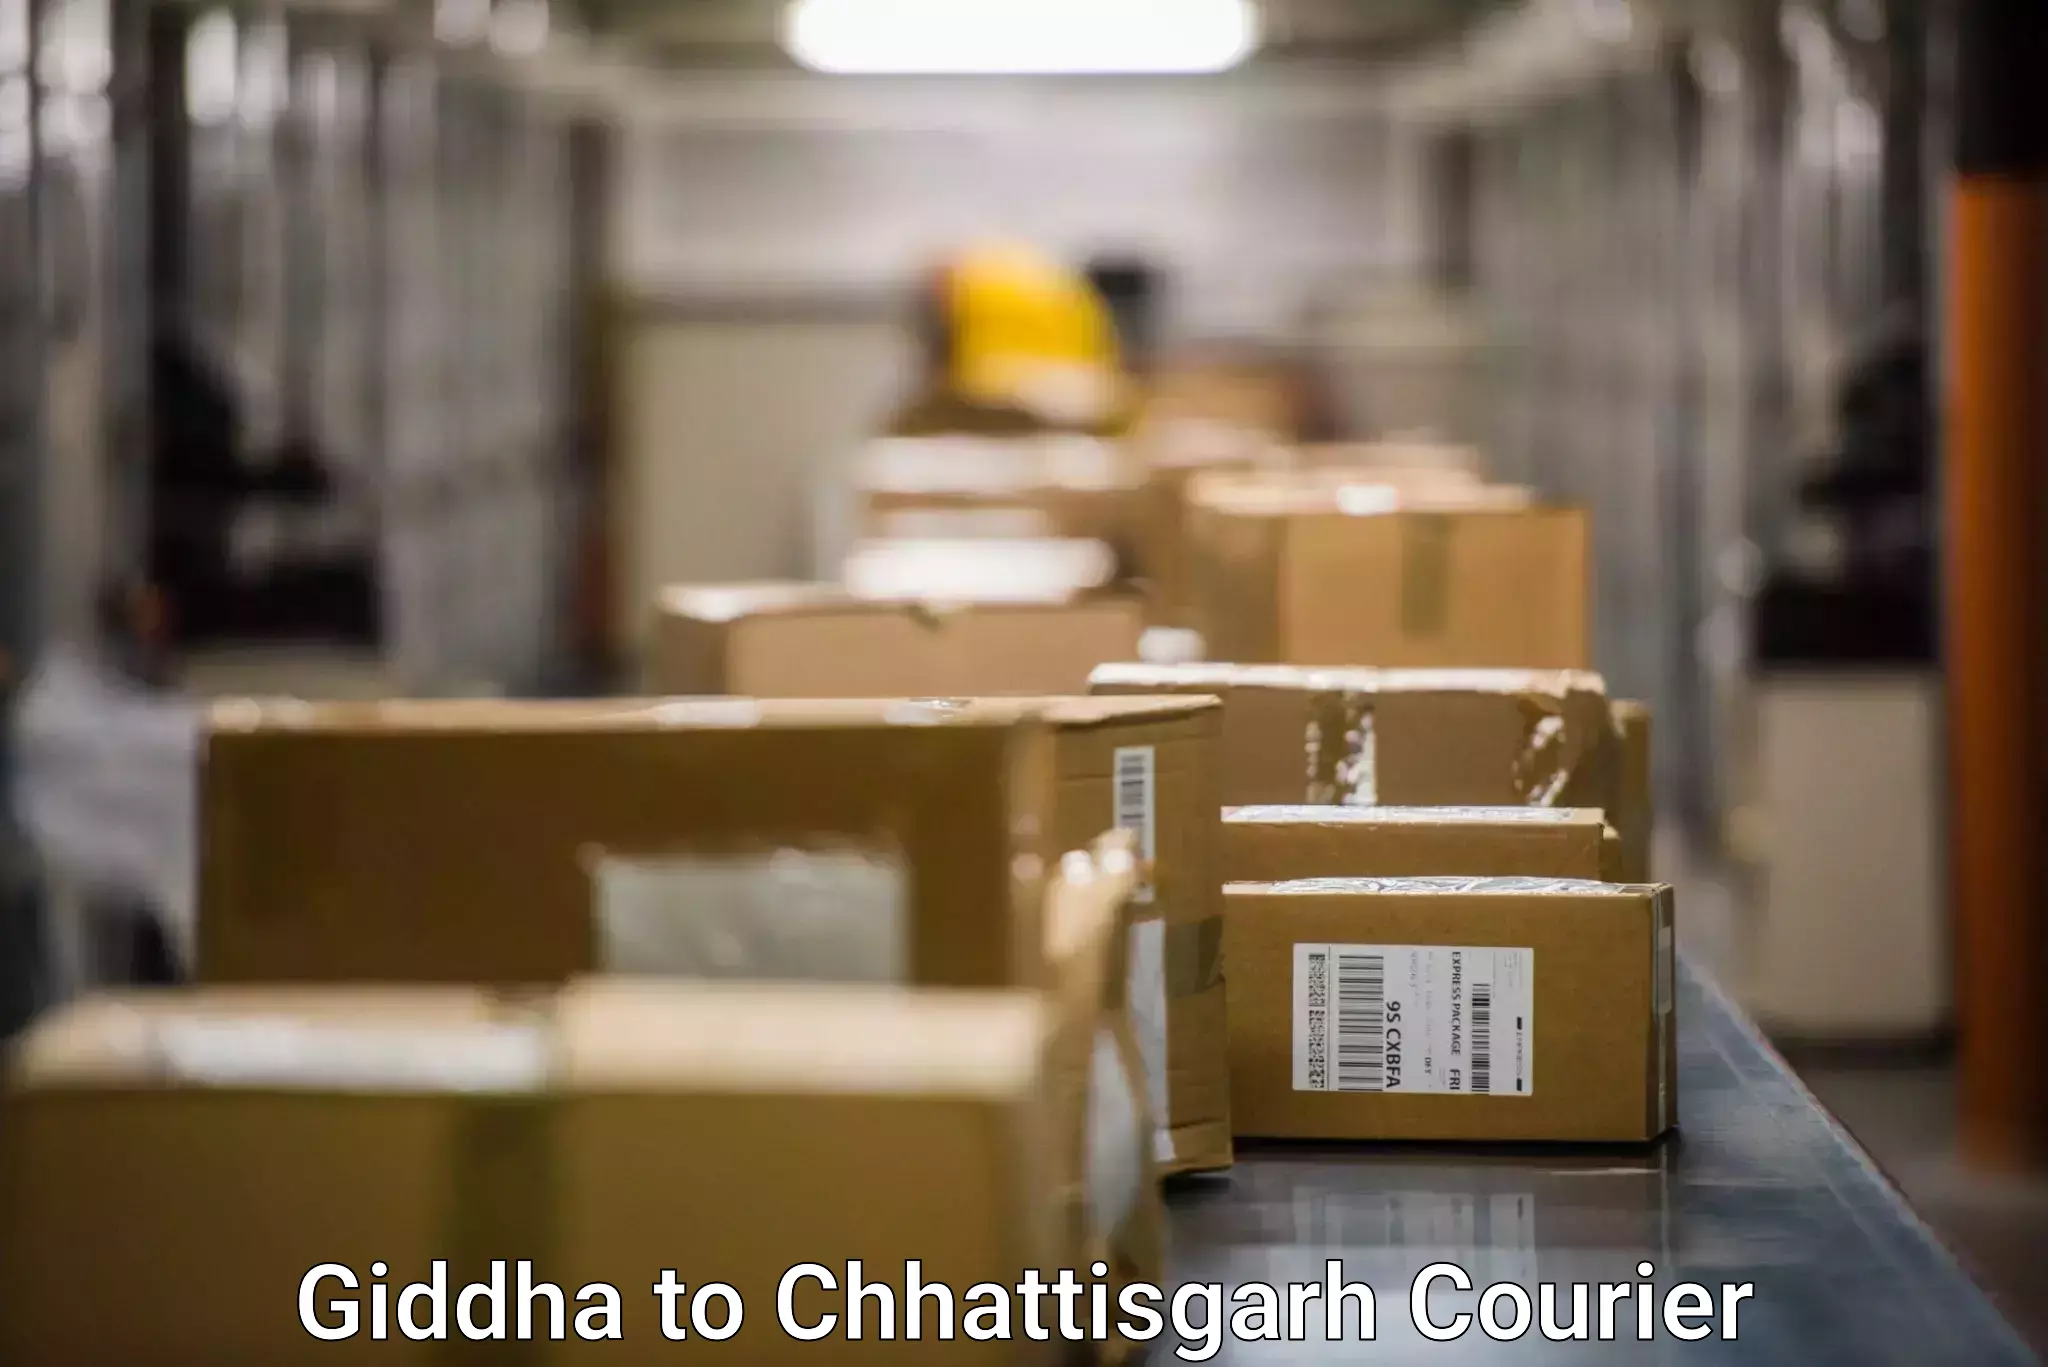 Door-to-door freight service Giddha to Chhattisgarh